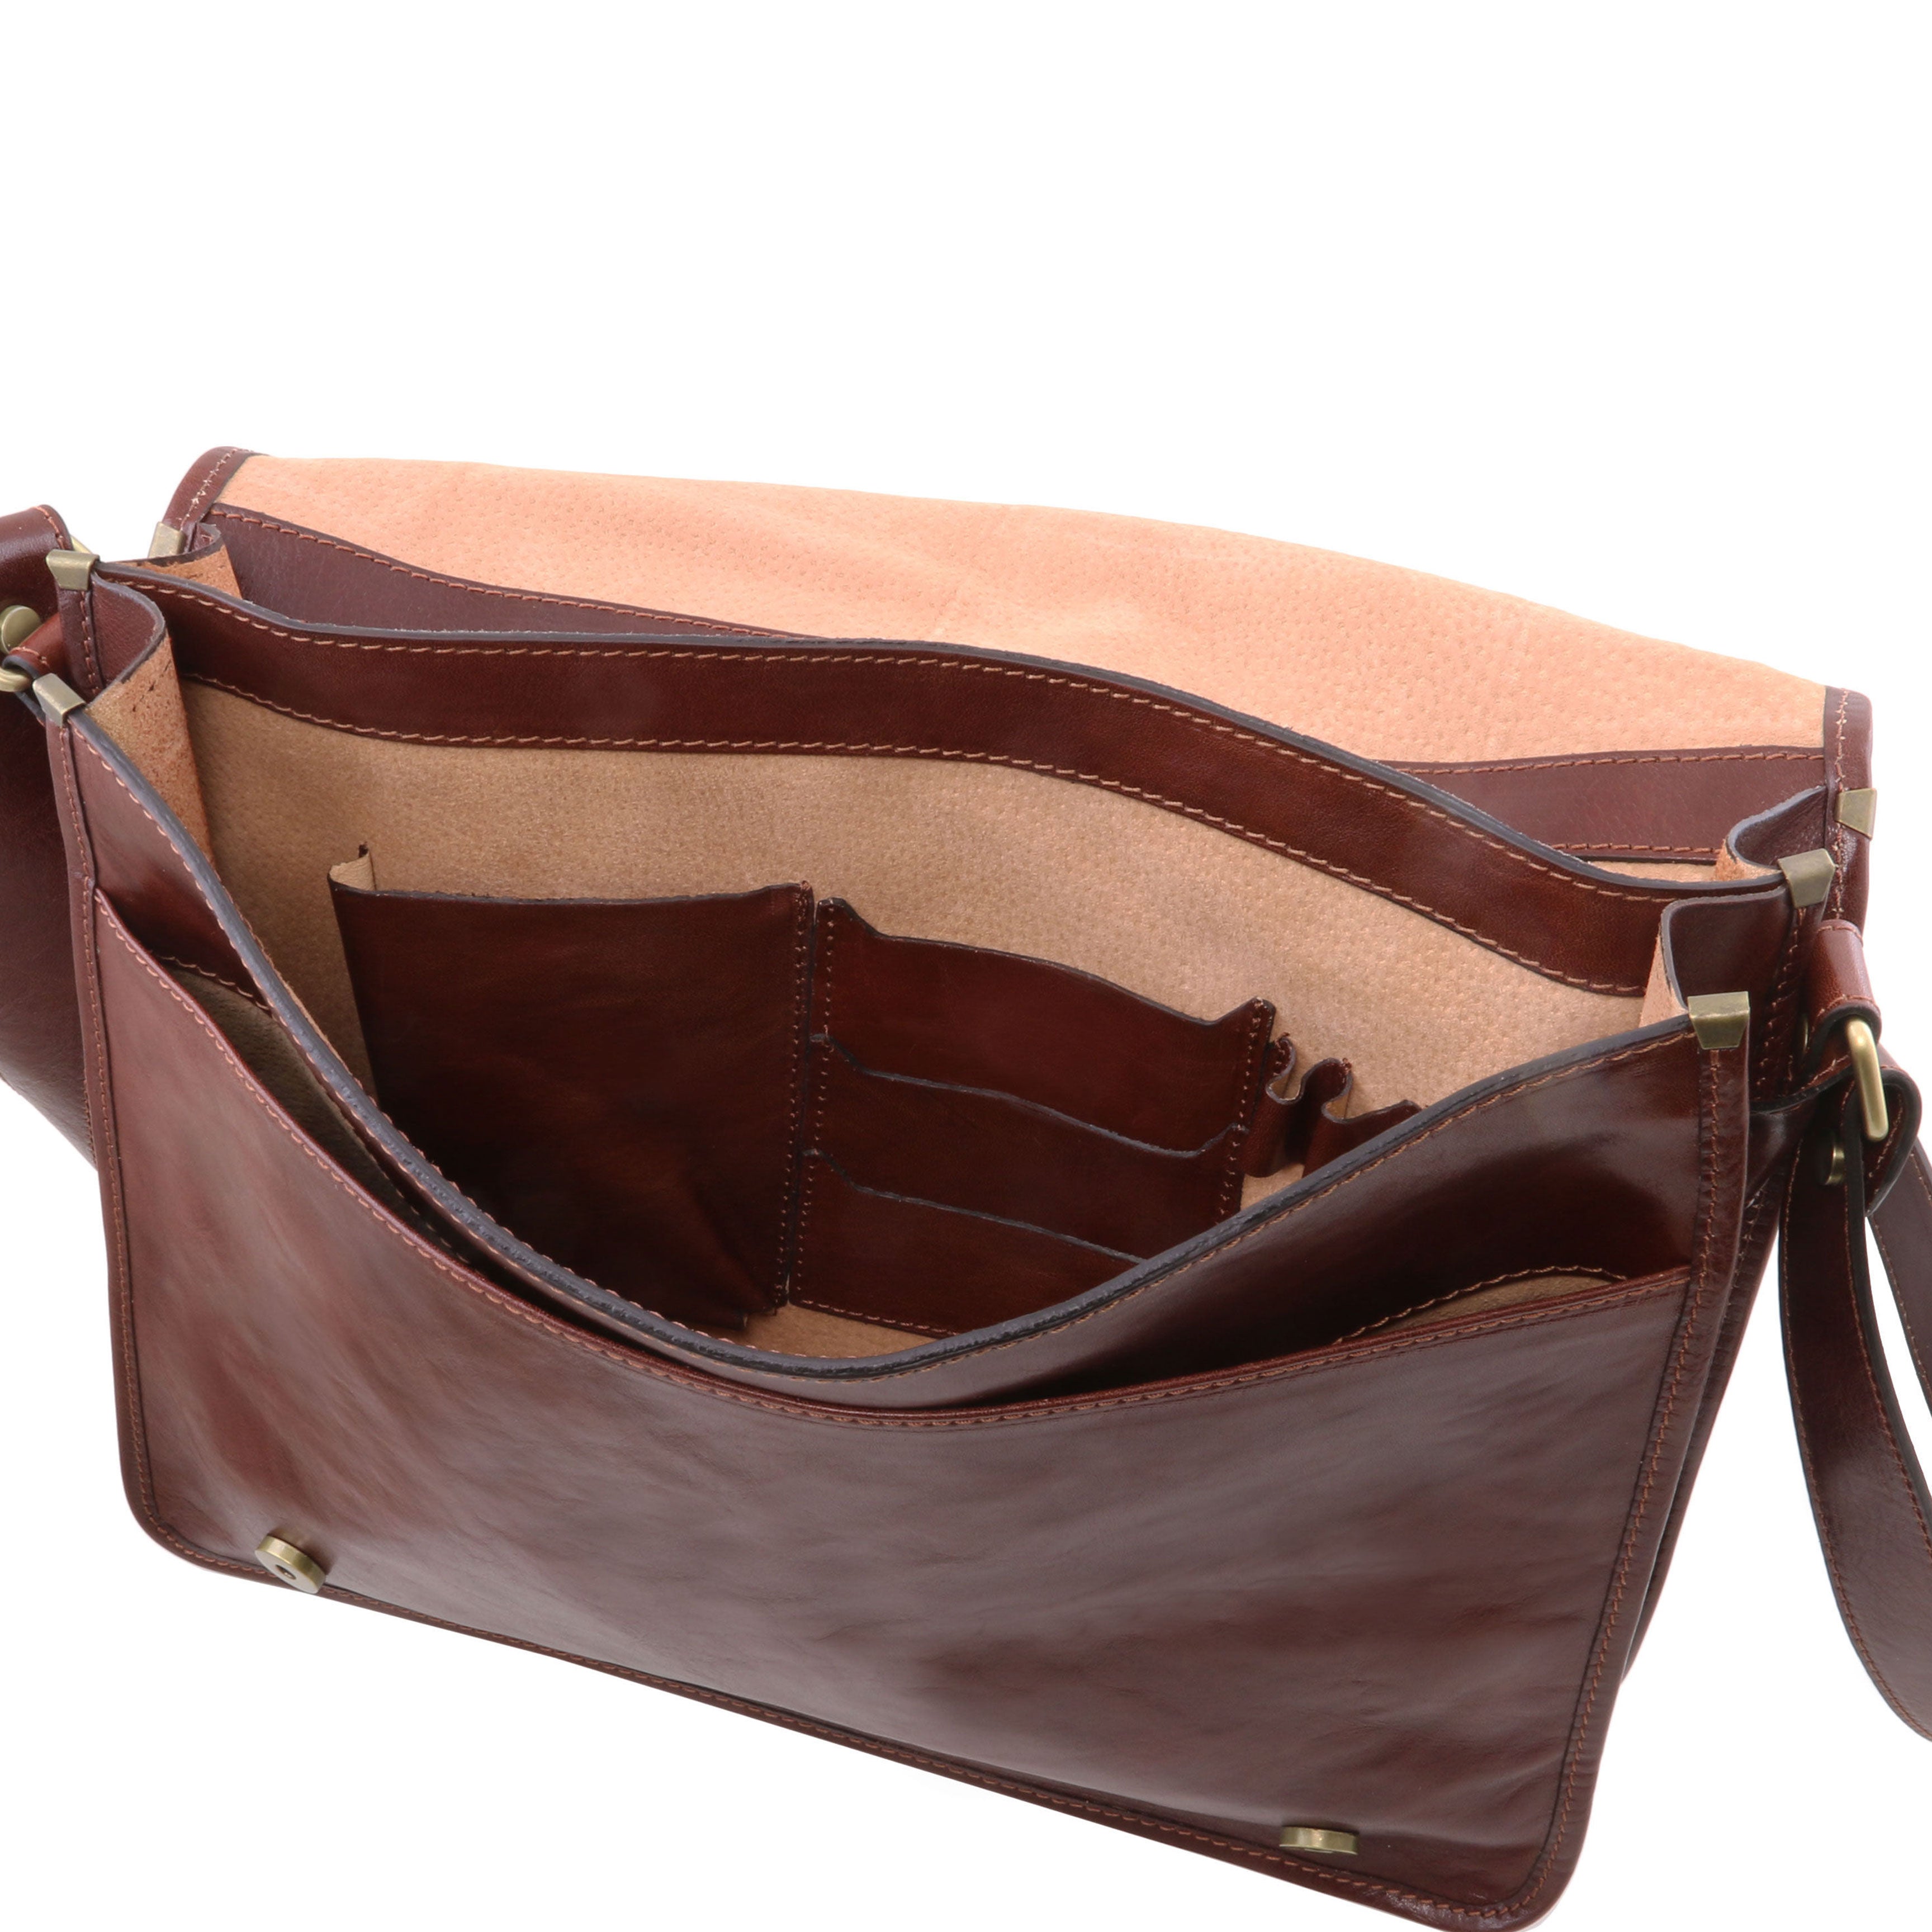 Big messenger bag brown⎪ Tuscany Leather